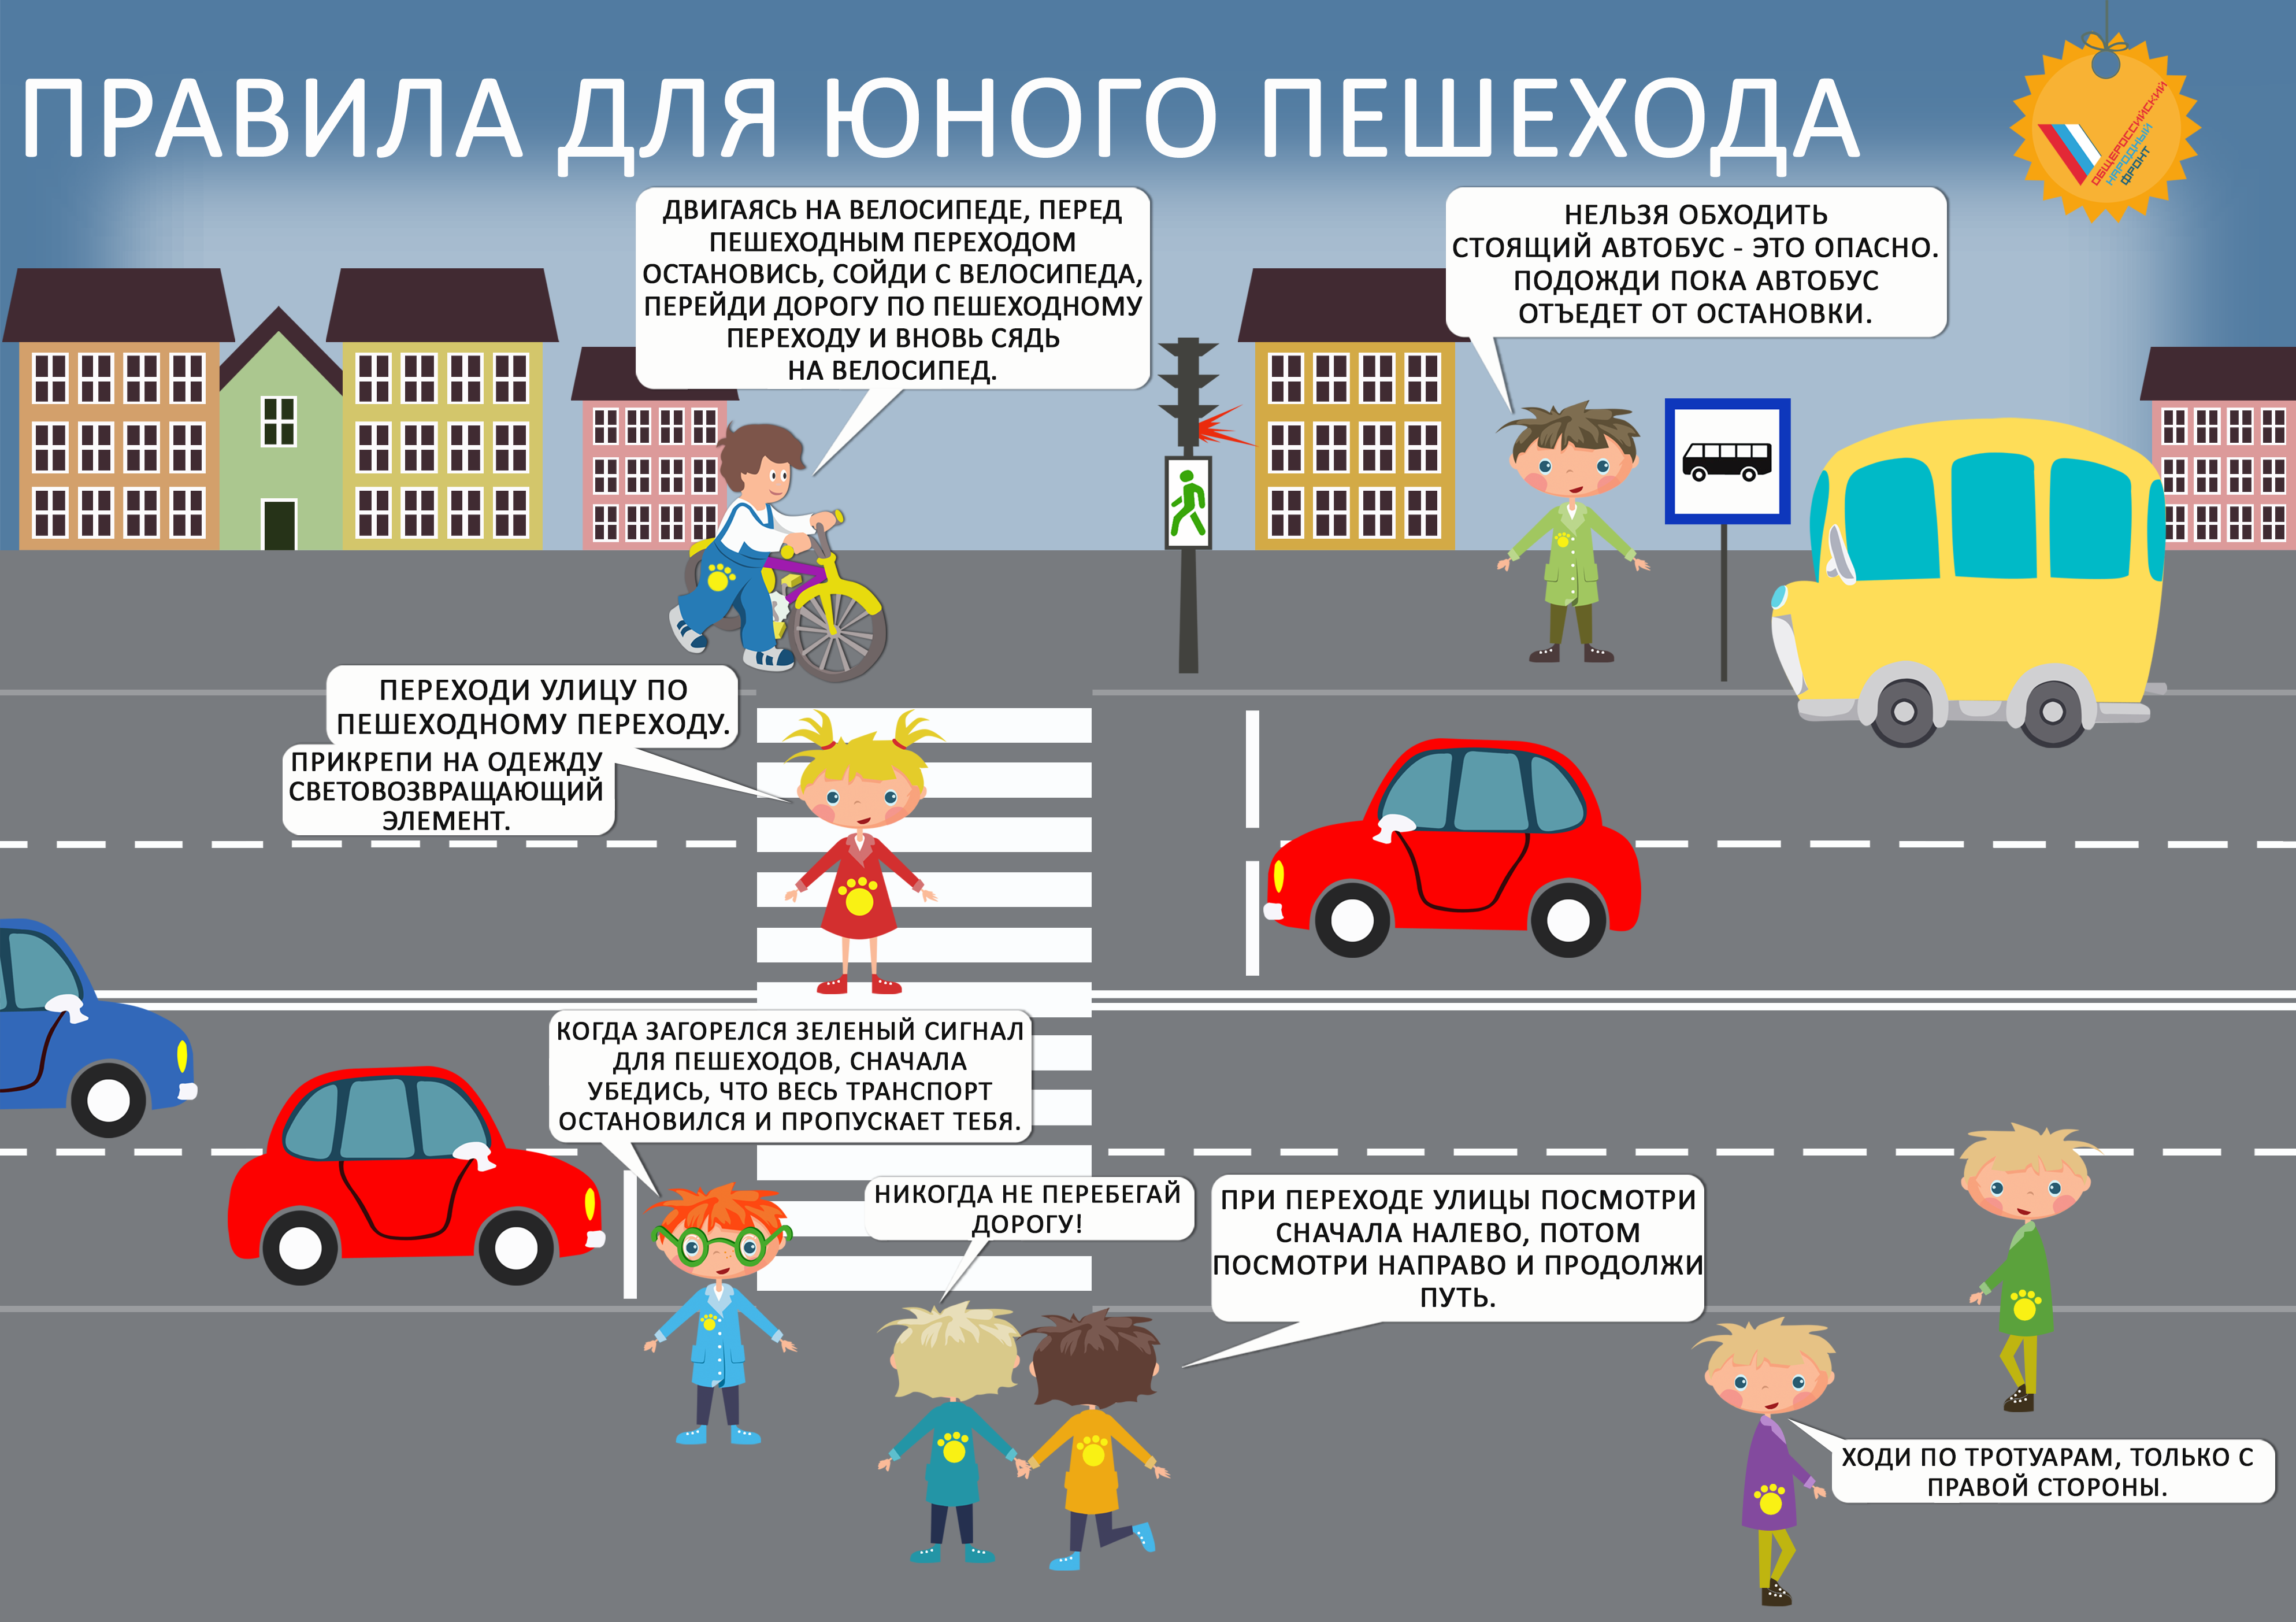 Правило дорожного движение д е. Правила дорожного движения для детей. Правила дорожного движения для пешеходов. Правила дорожного движения для пешеходов для детей. Правило дорожного движения для детей.